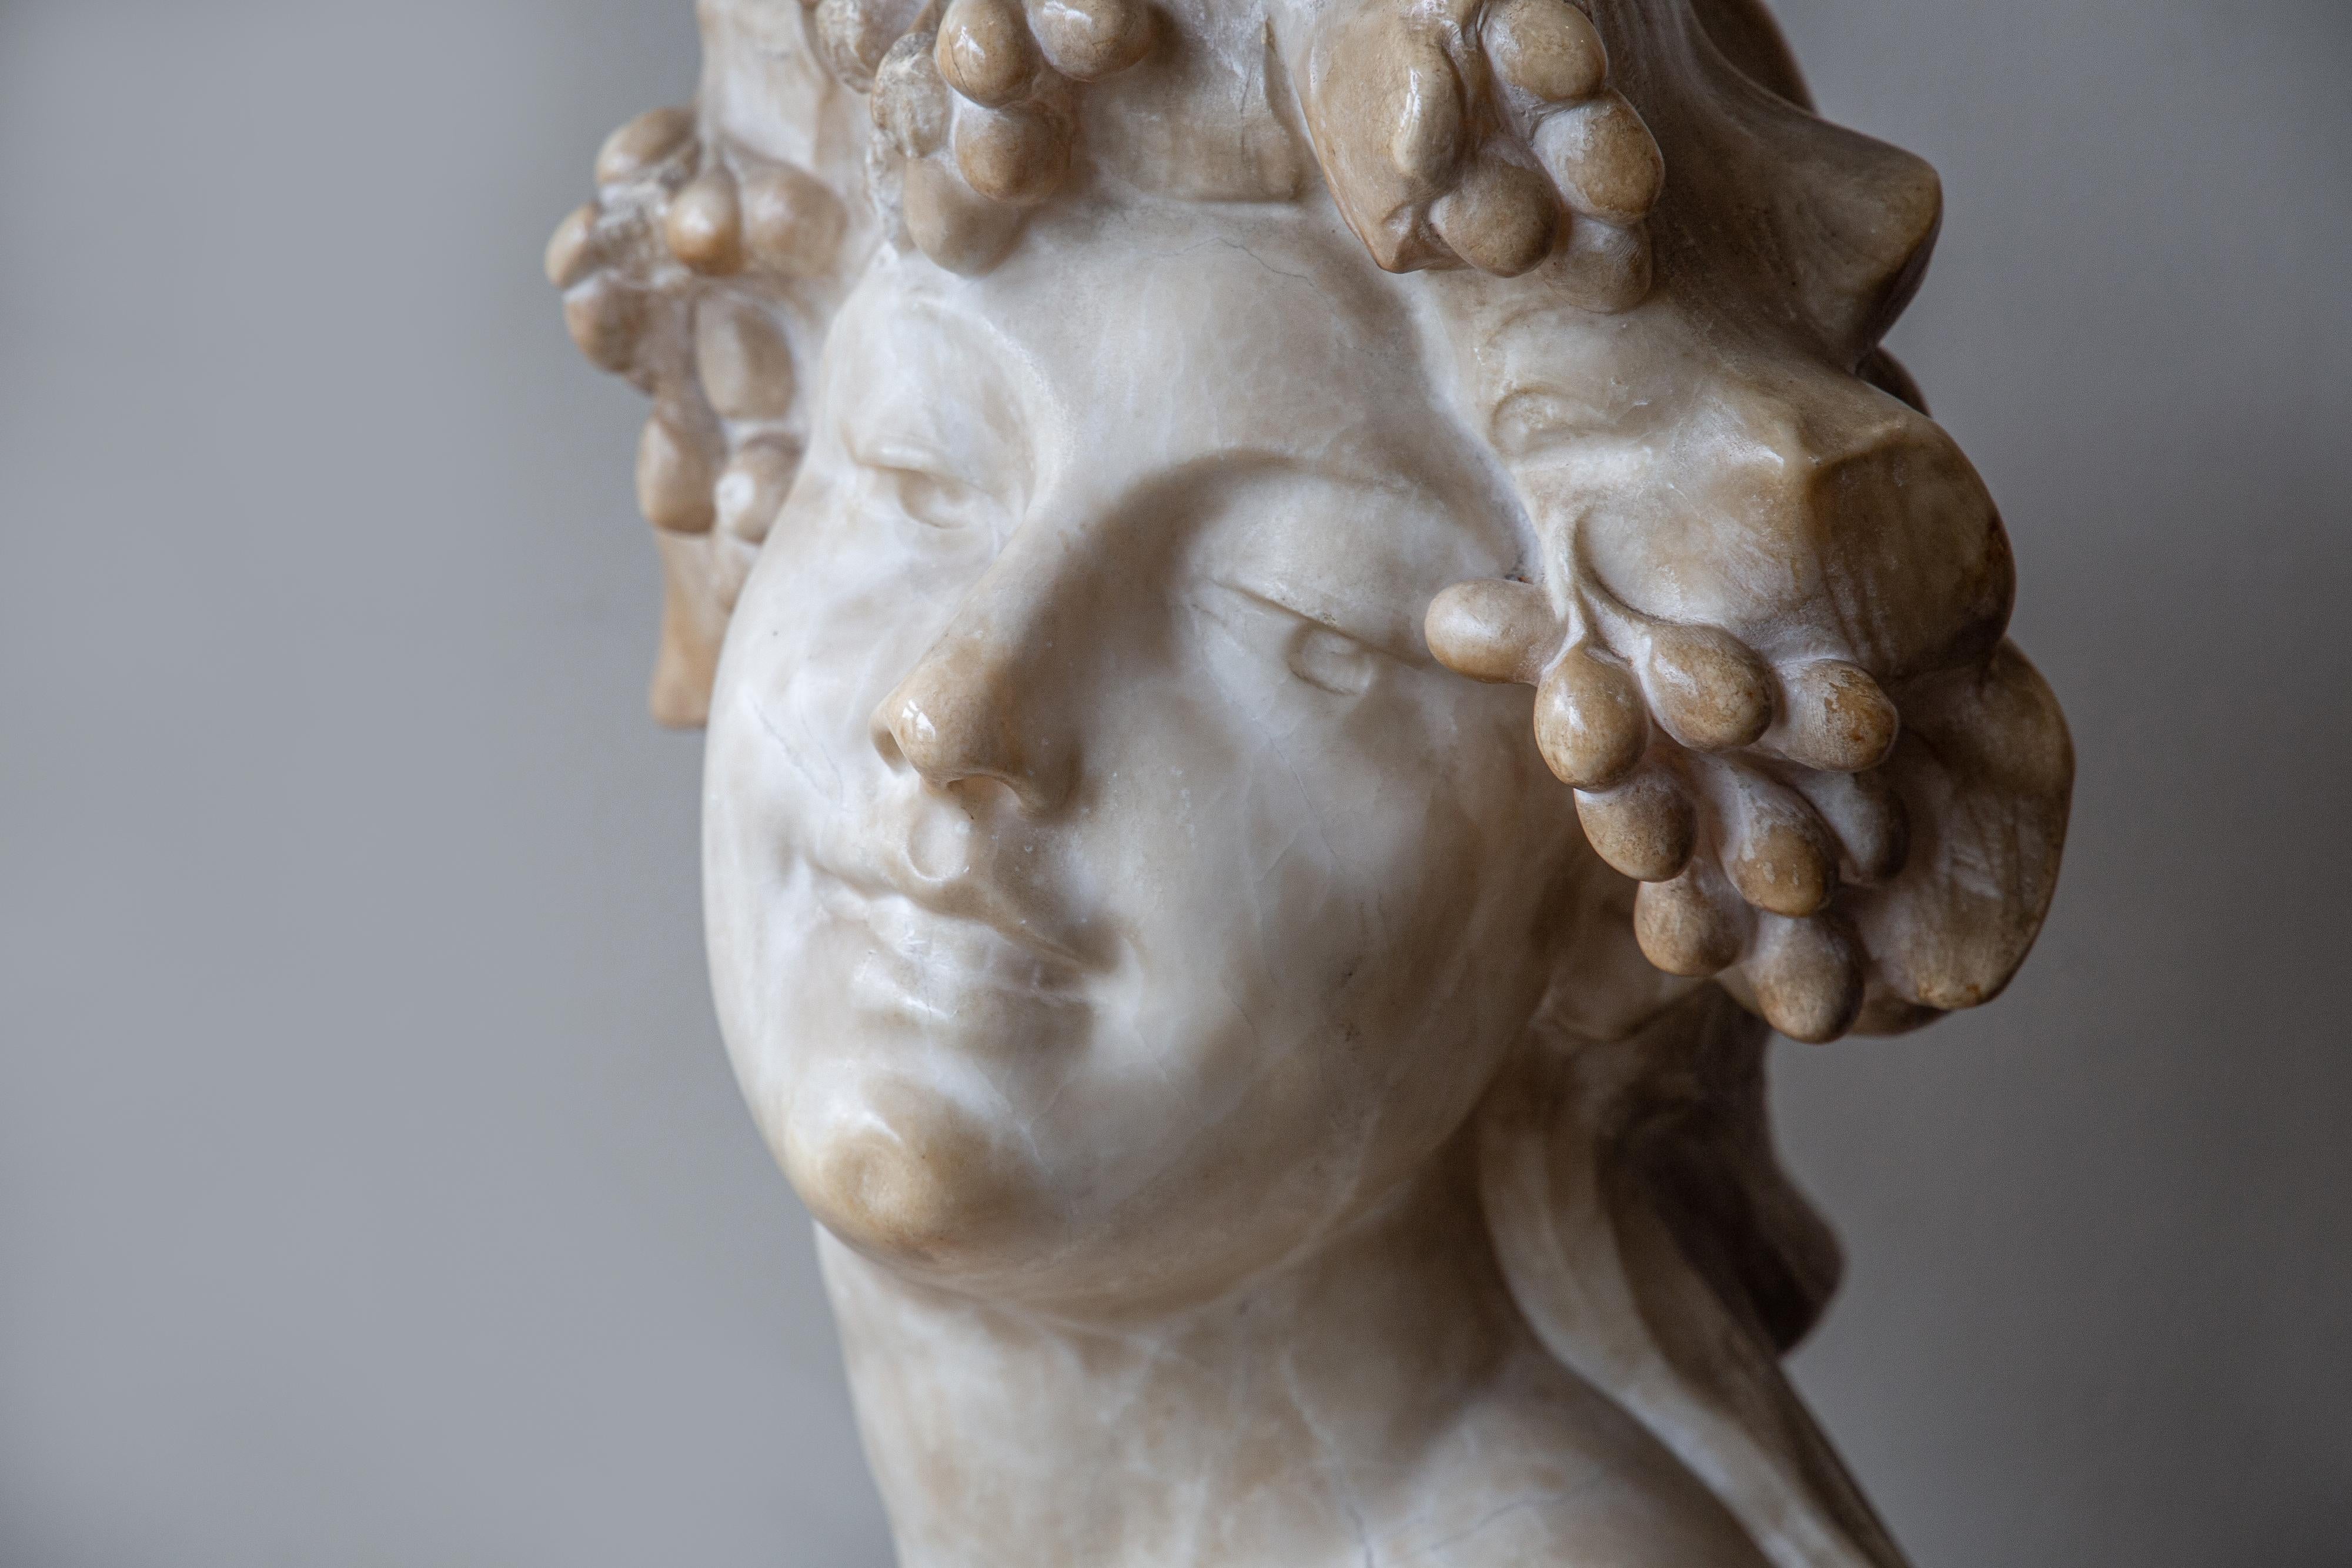 20th Century An Ecstatic Bacchanalian figure in alabaster by Jef Lambeaux, early 20th century